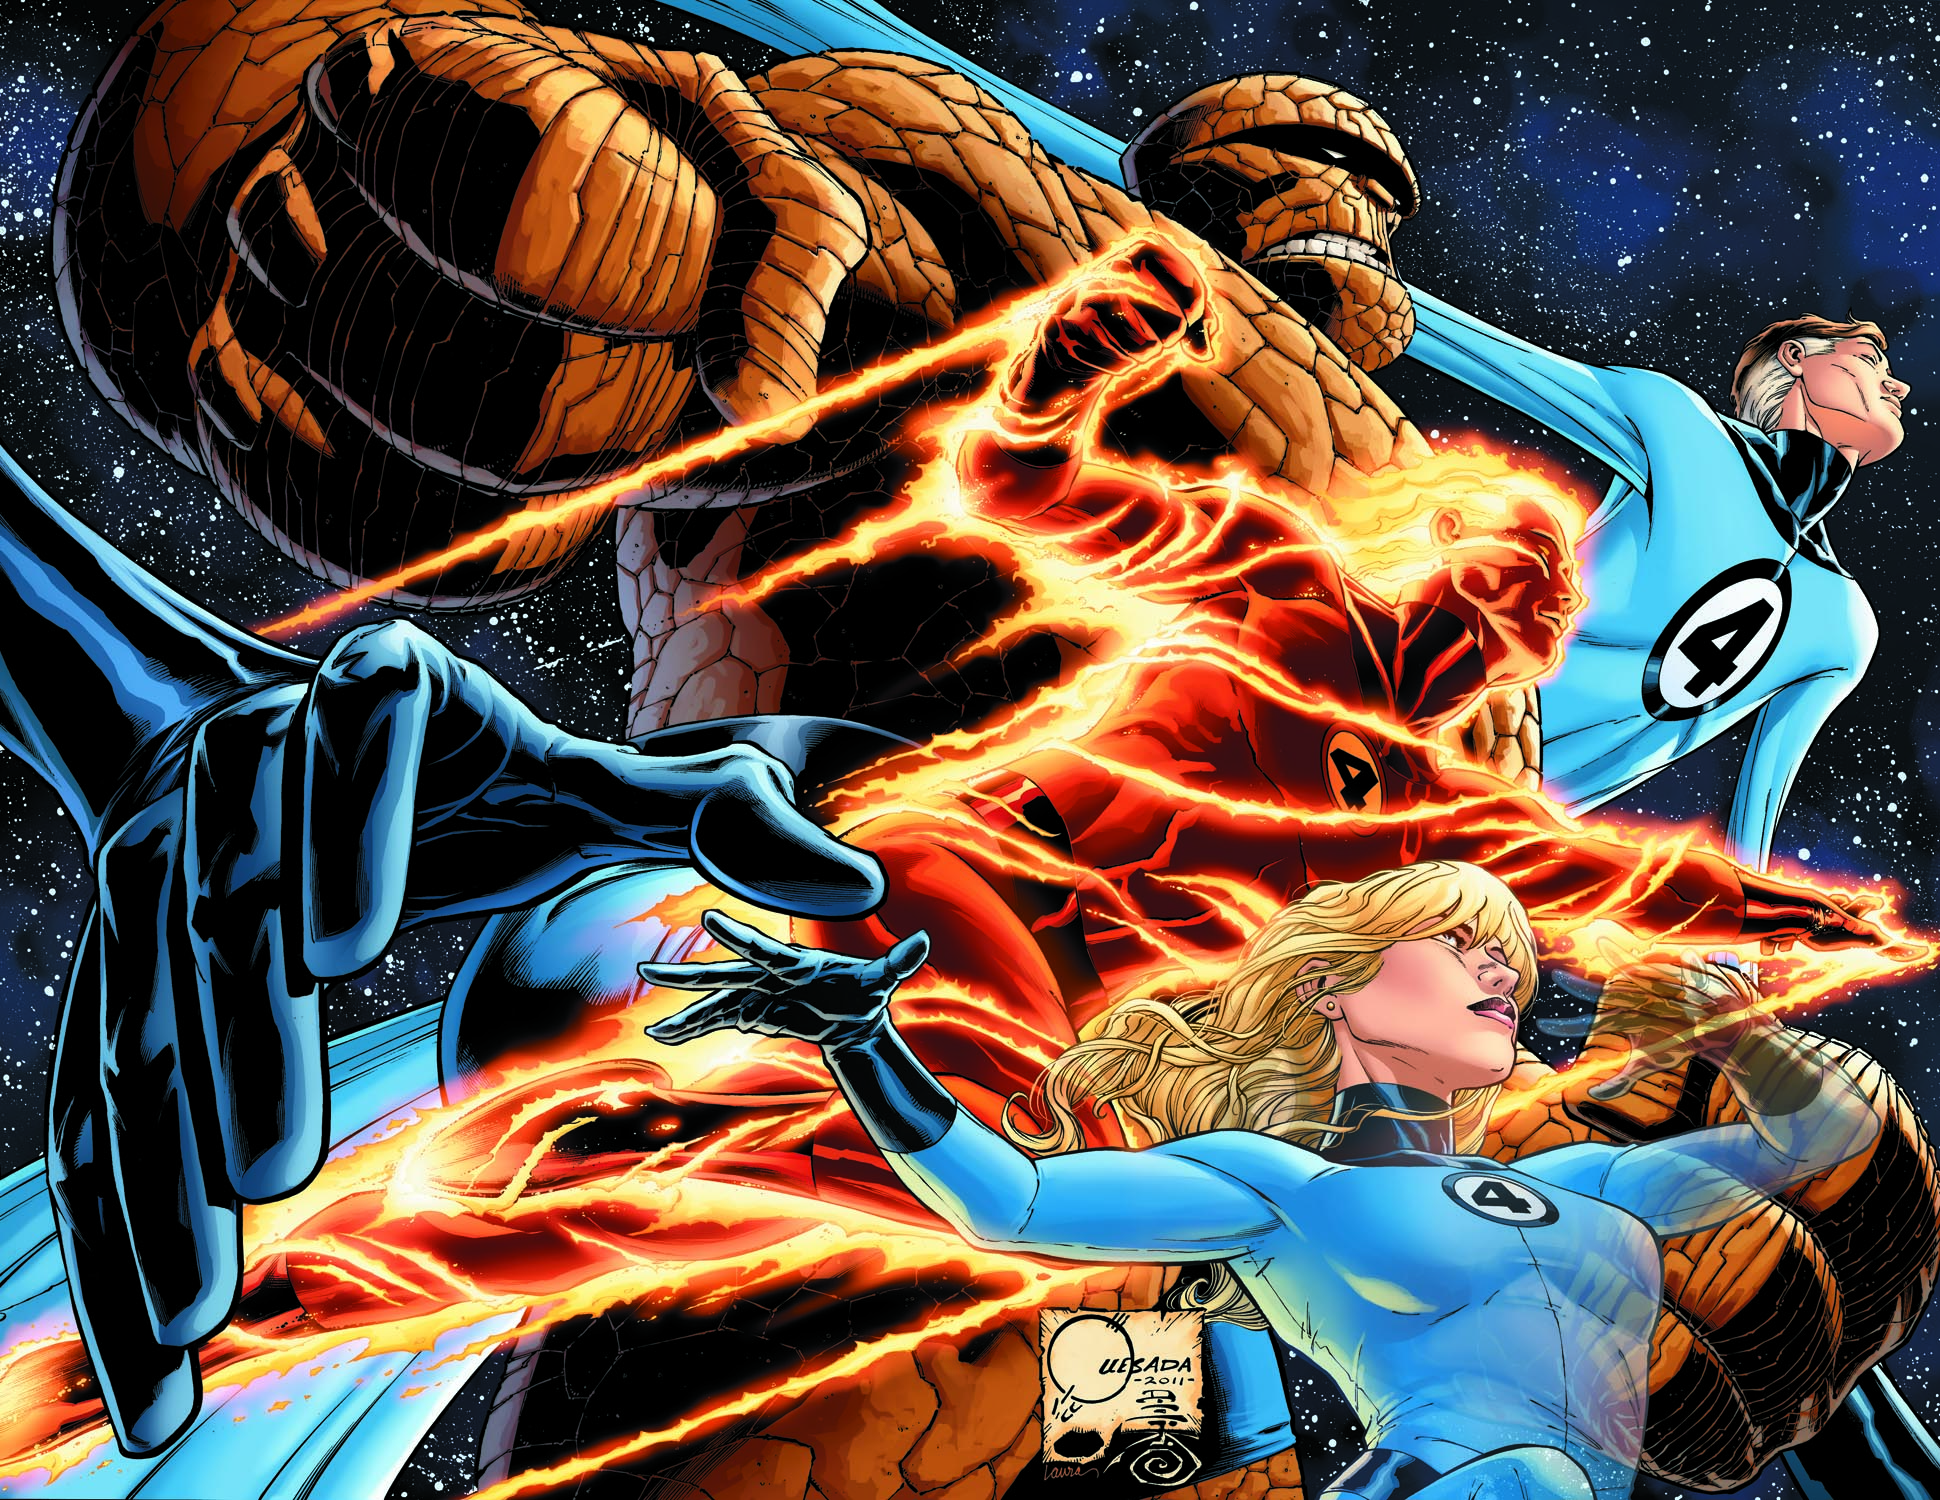 Regular Cover 1st Print Fantastic Four # 1 Marvel 2018